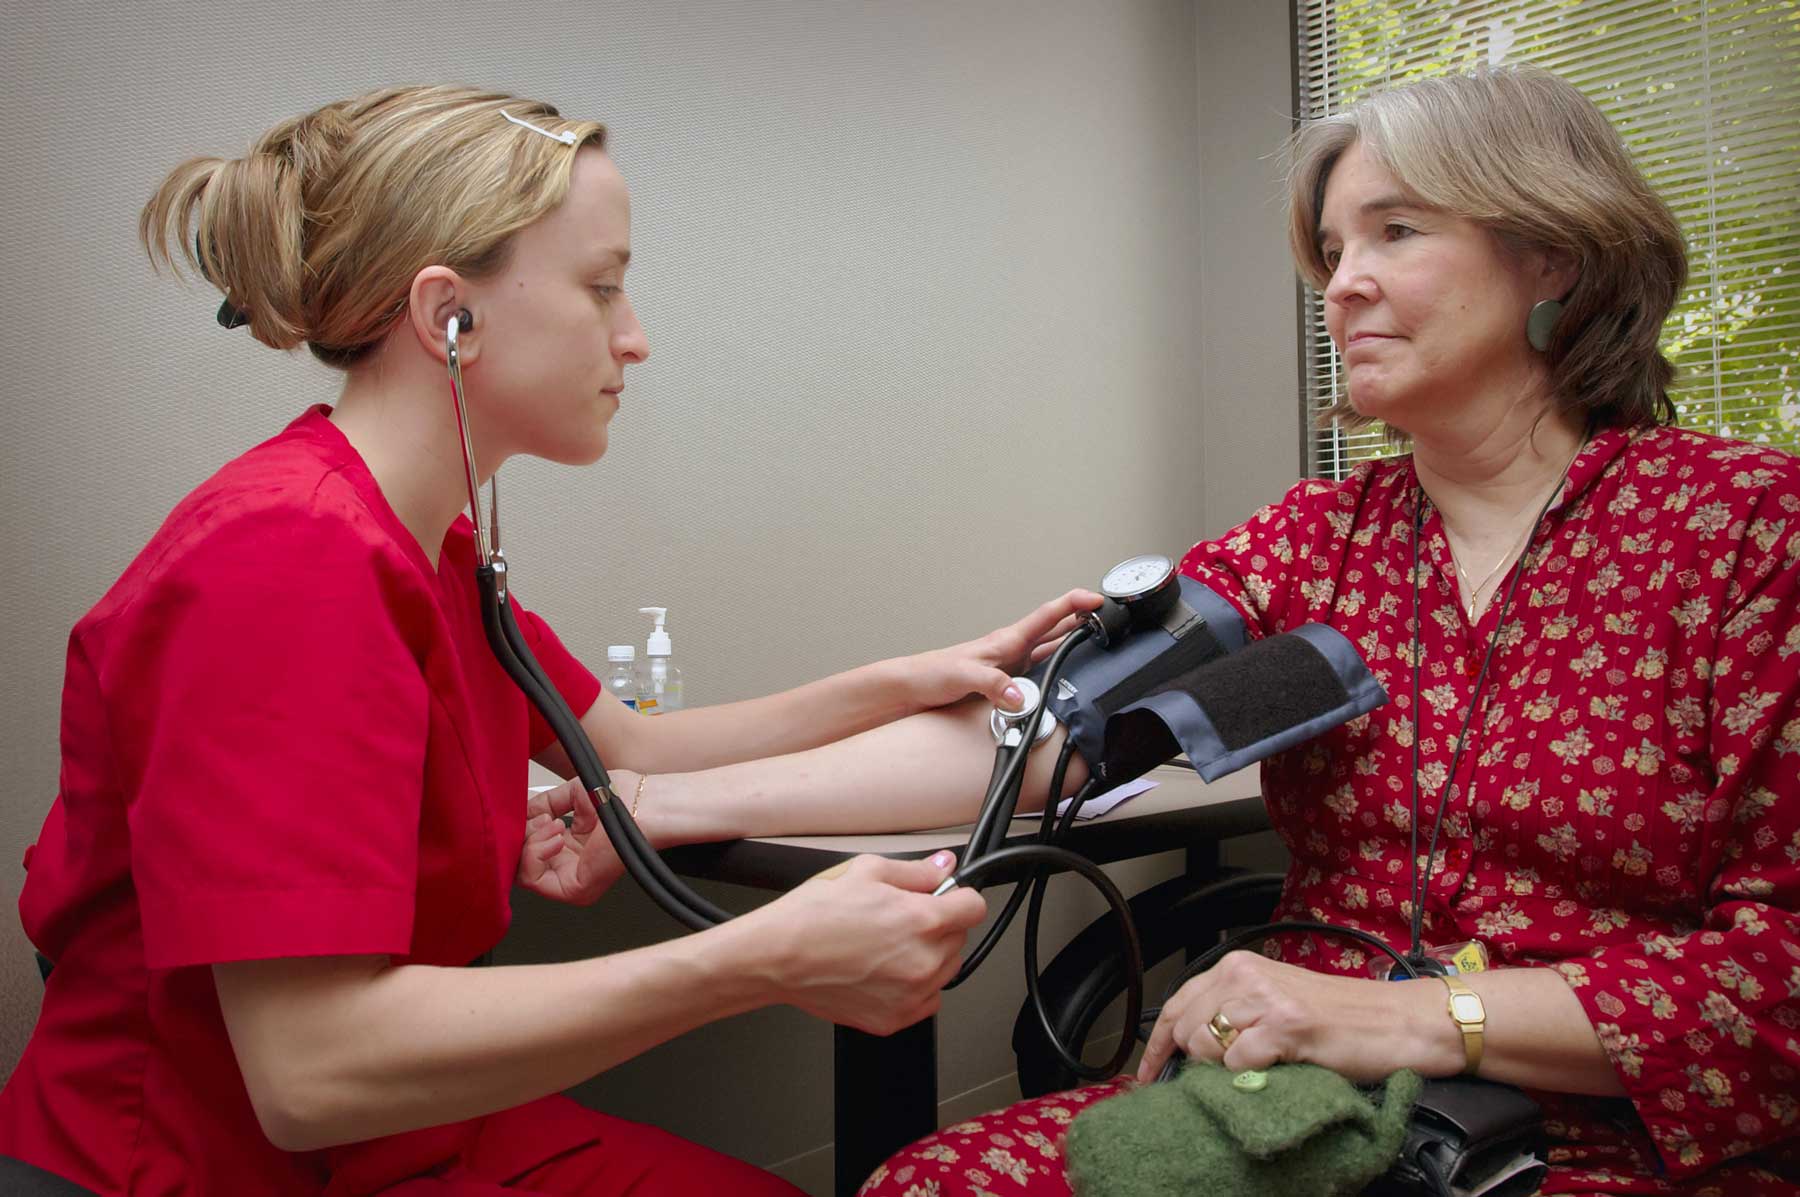 A nurse takes a patient's blood pressure